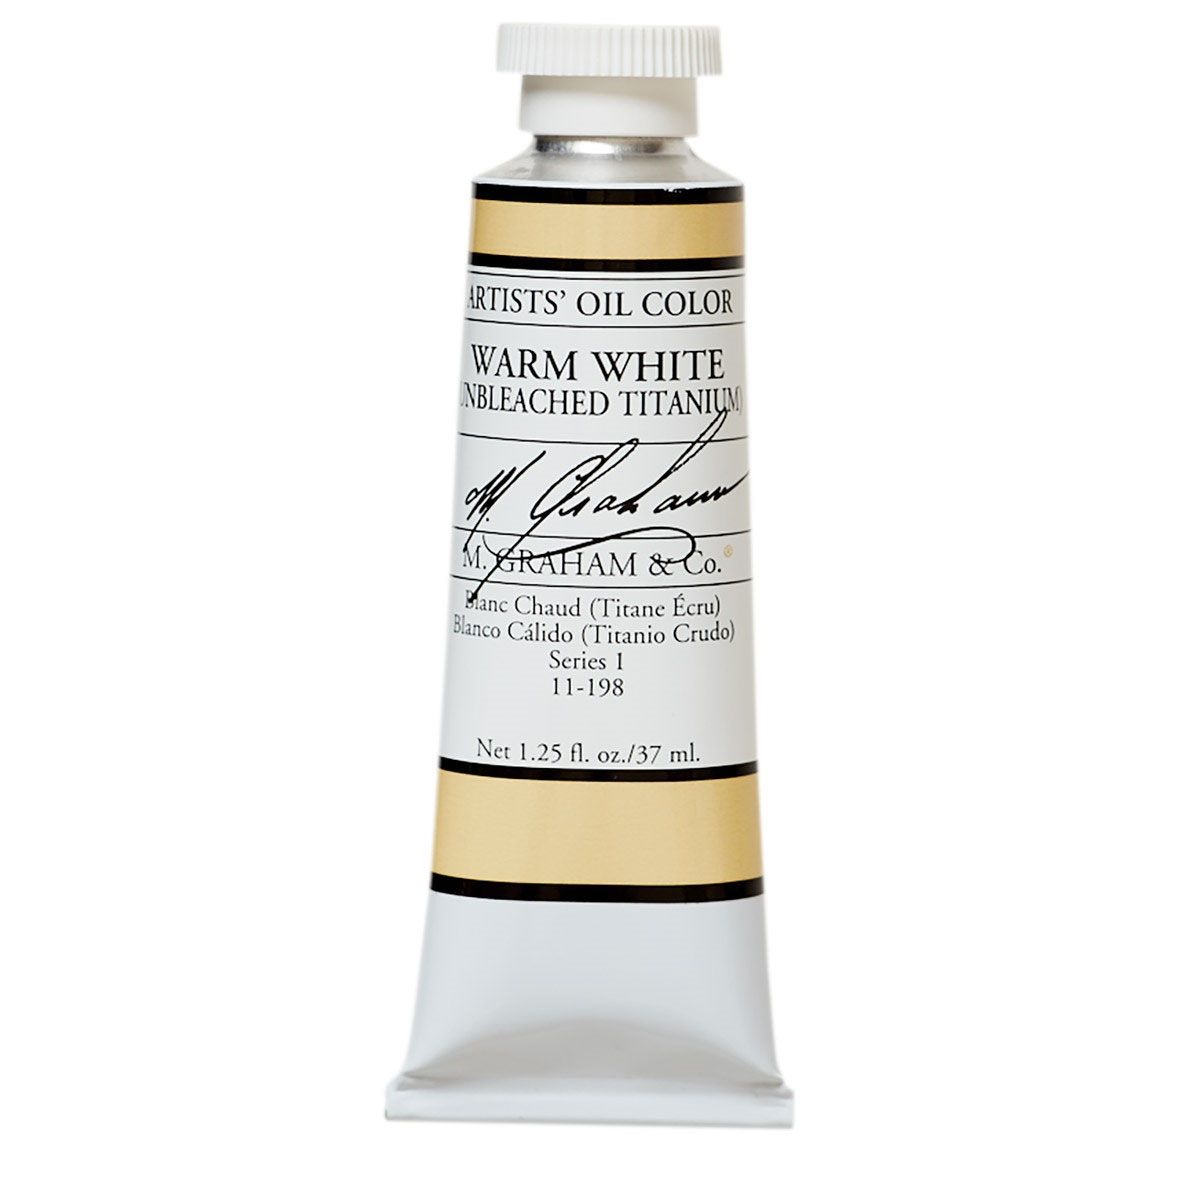 M Graham Oil Paint - Warm White (Unbleached Titanium) 37 ml